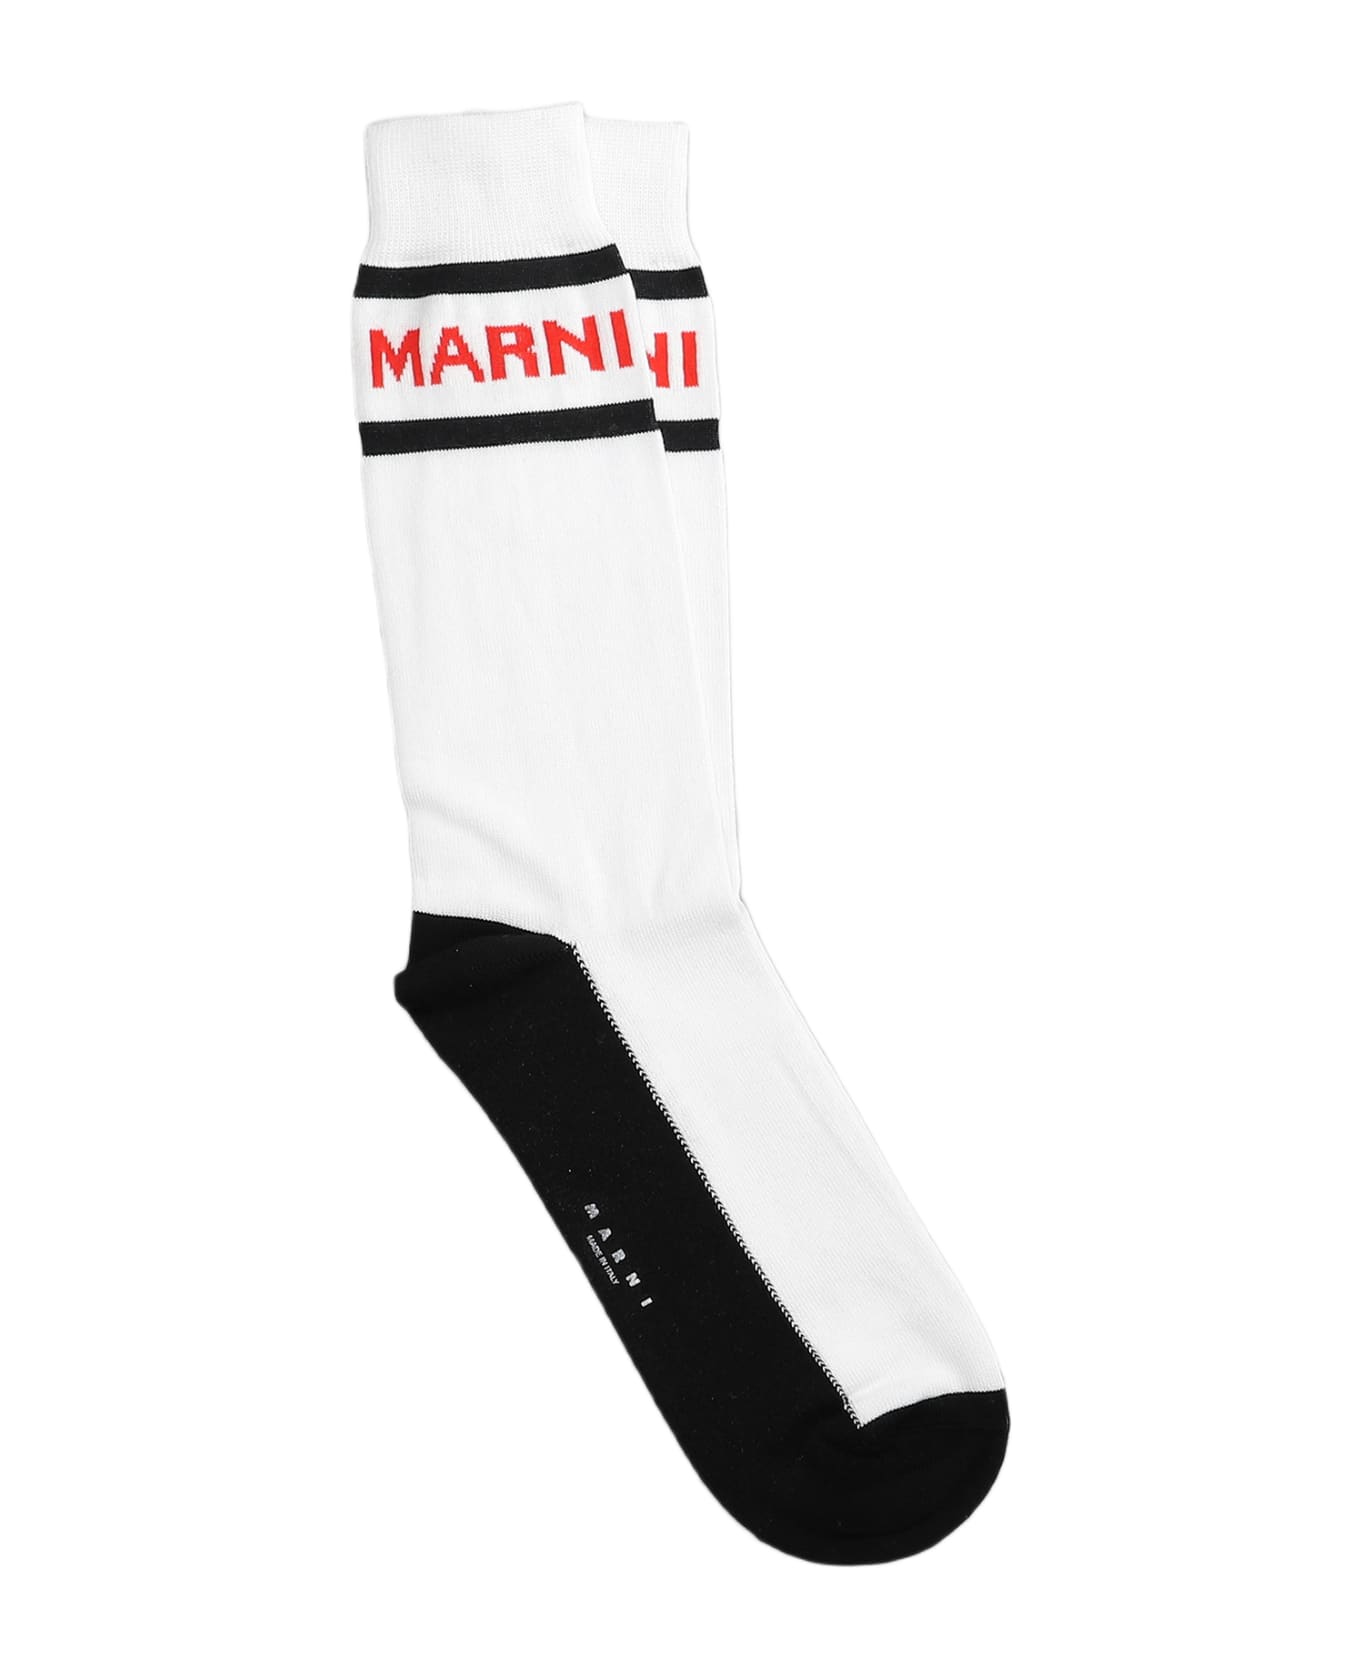 Marni White Cotton Socks - Bianco